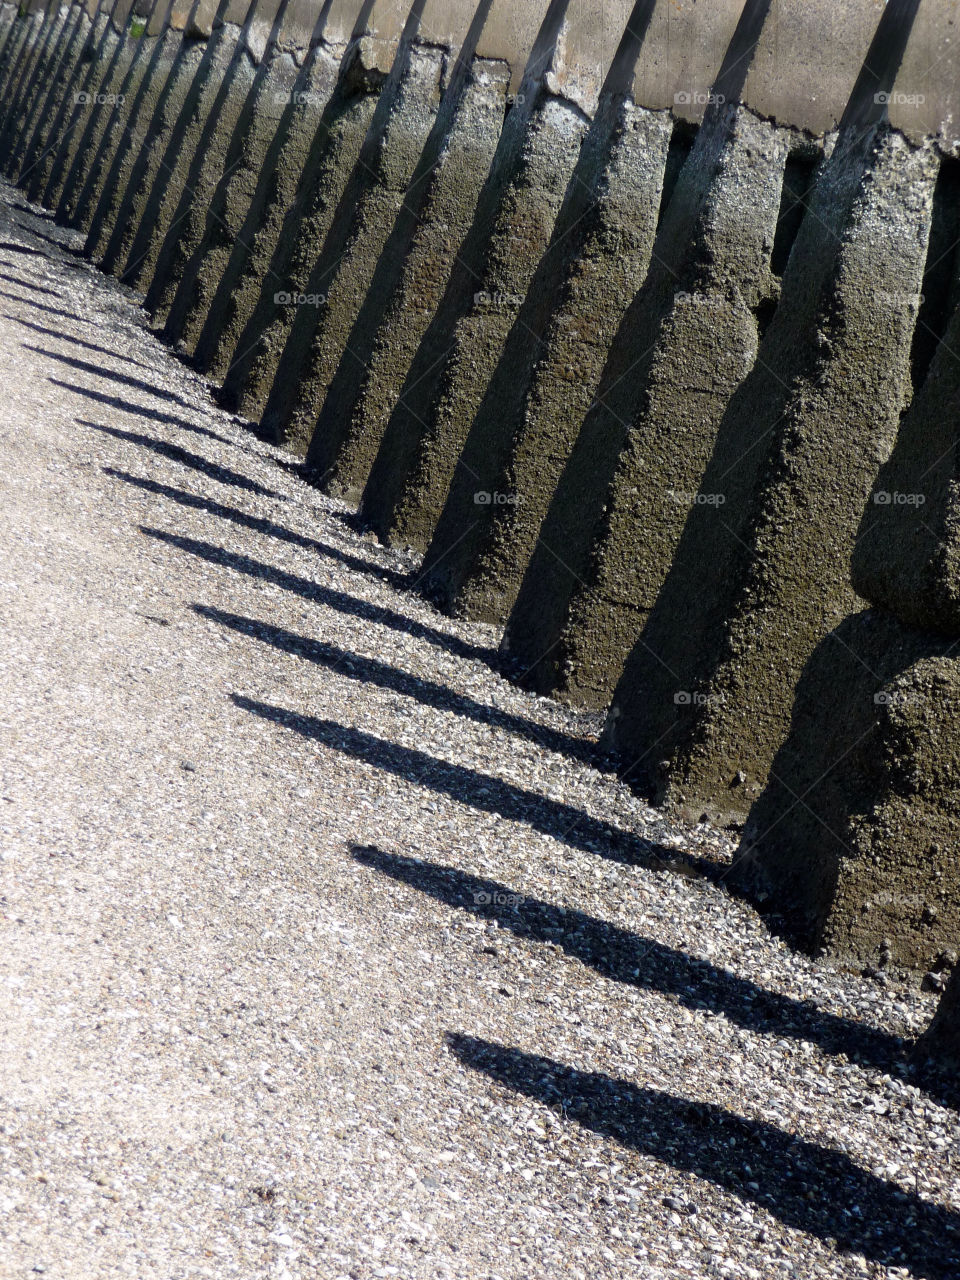 stones sea edinburgh walkway by ptrendy